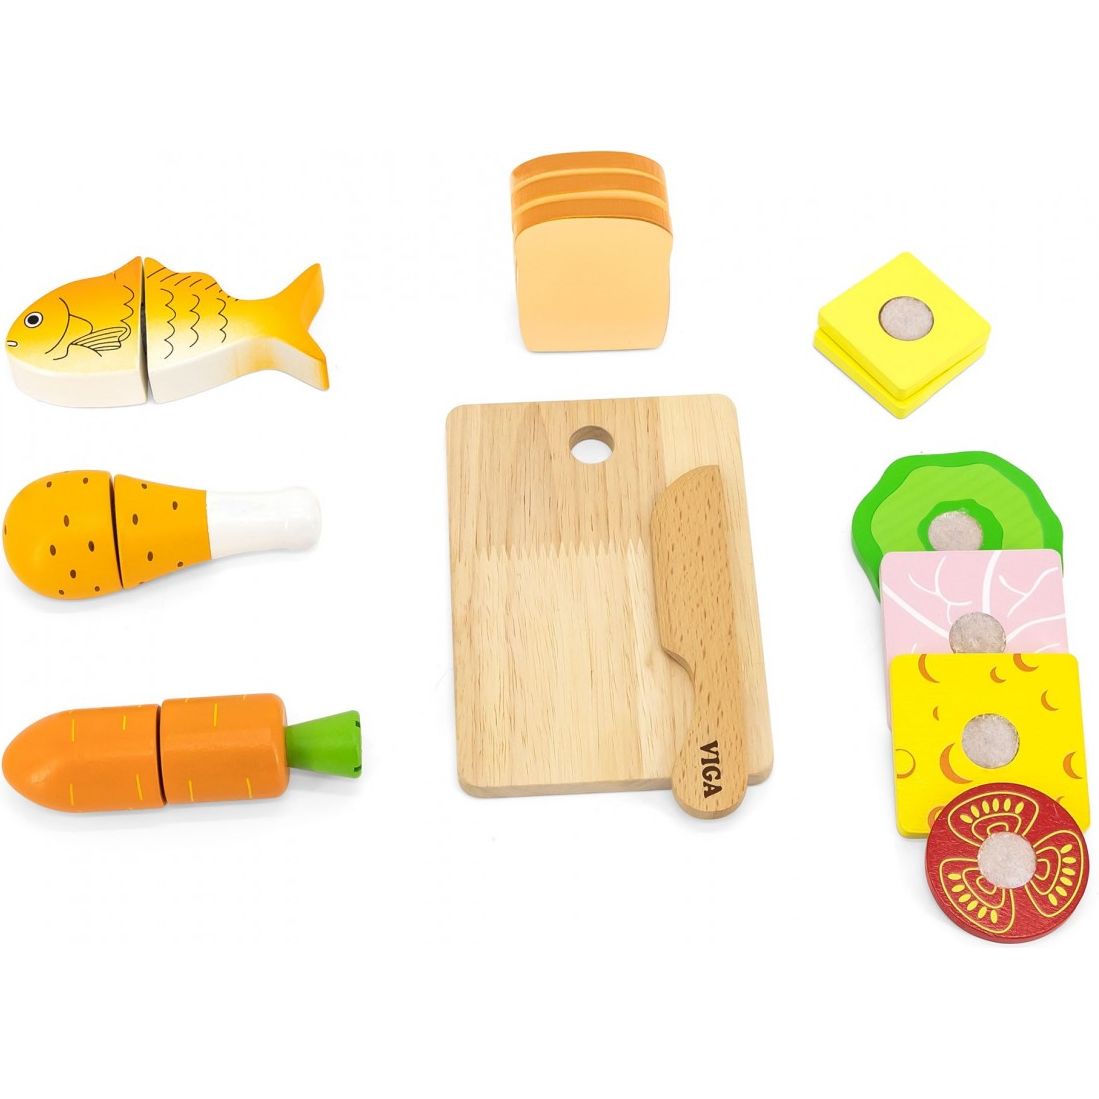 Іграшкові продукти Viga Toys Обід (44542) - фото 2